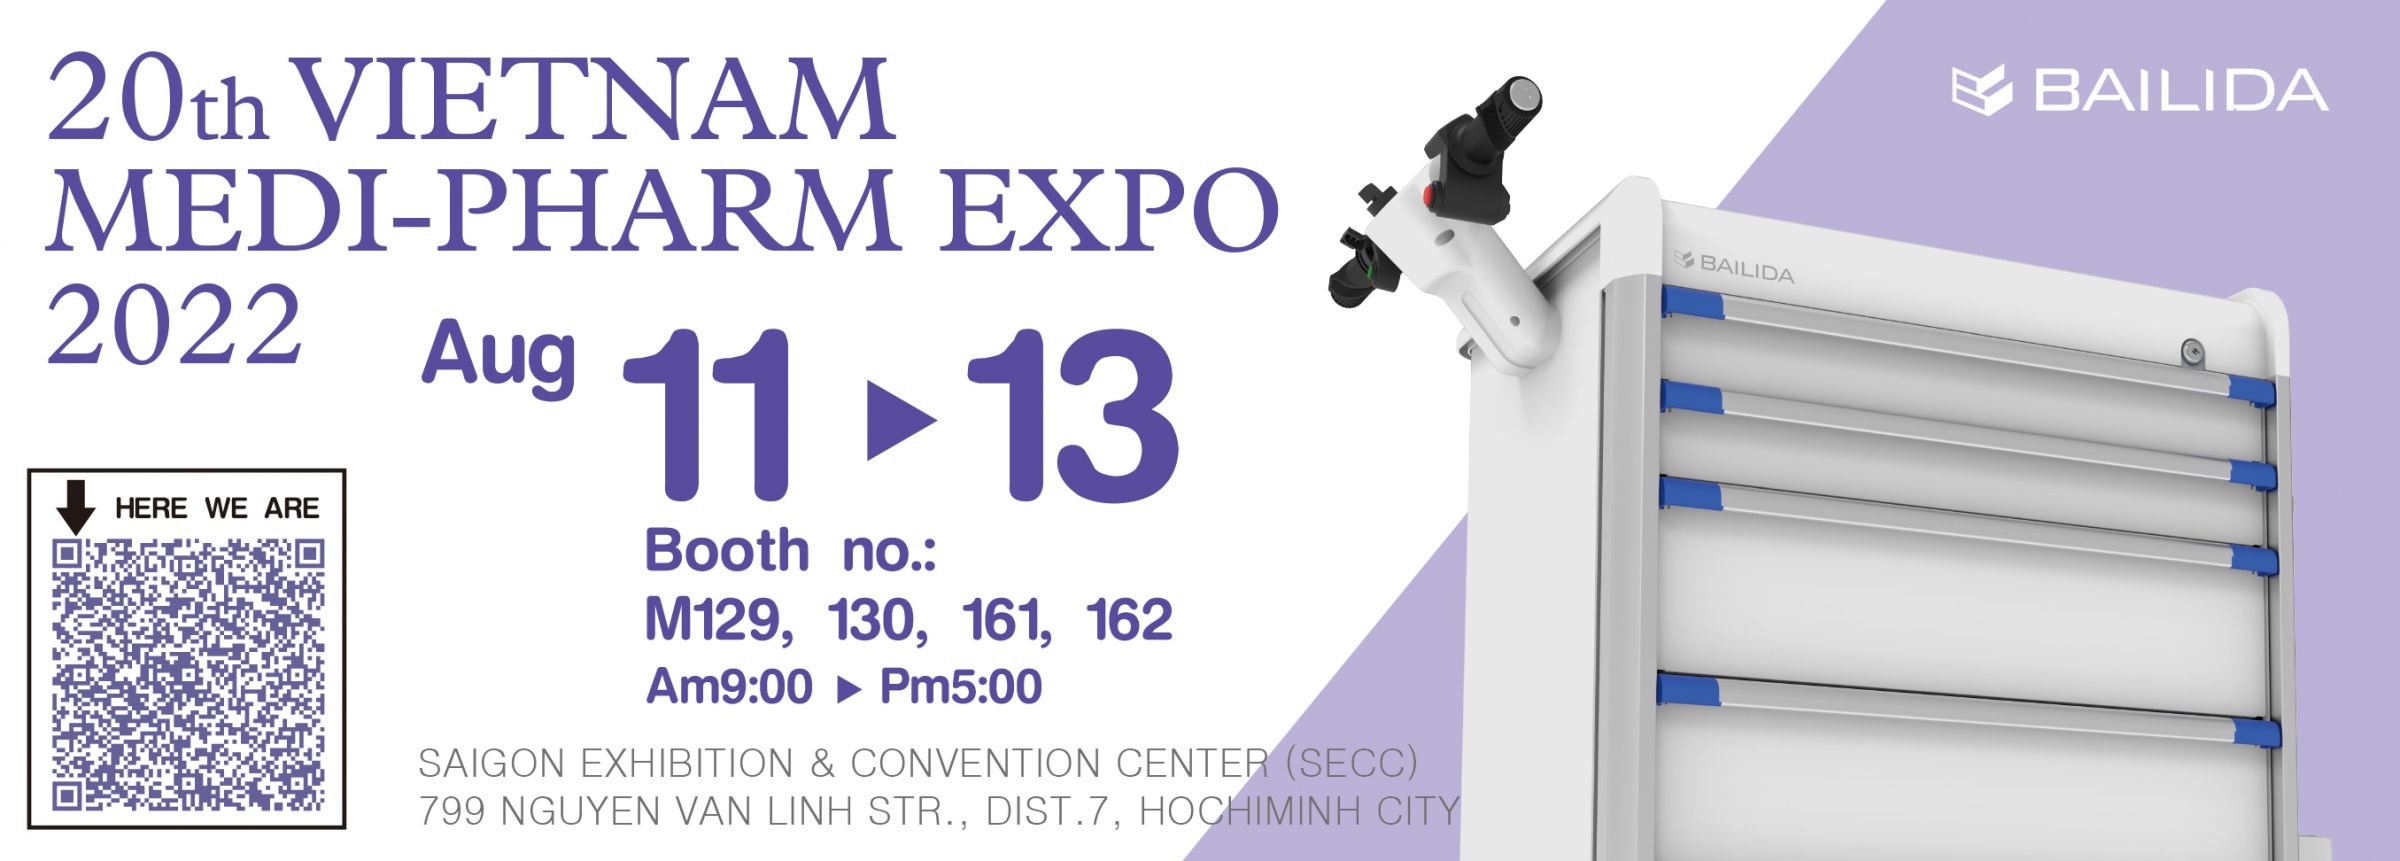 20th VIETNAM MEDI-PHARM EXPO 2022.